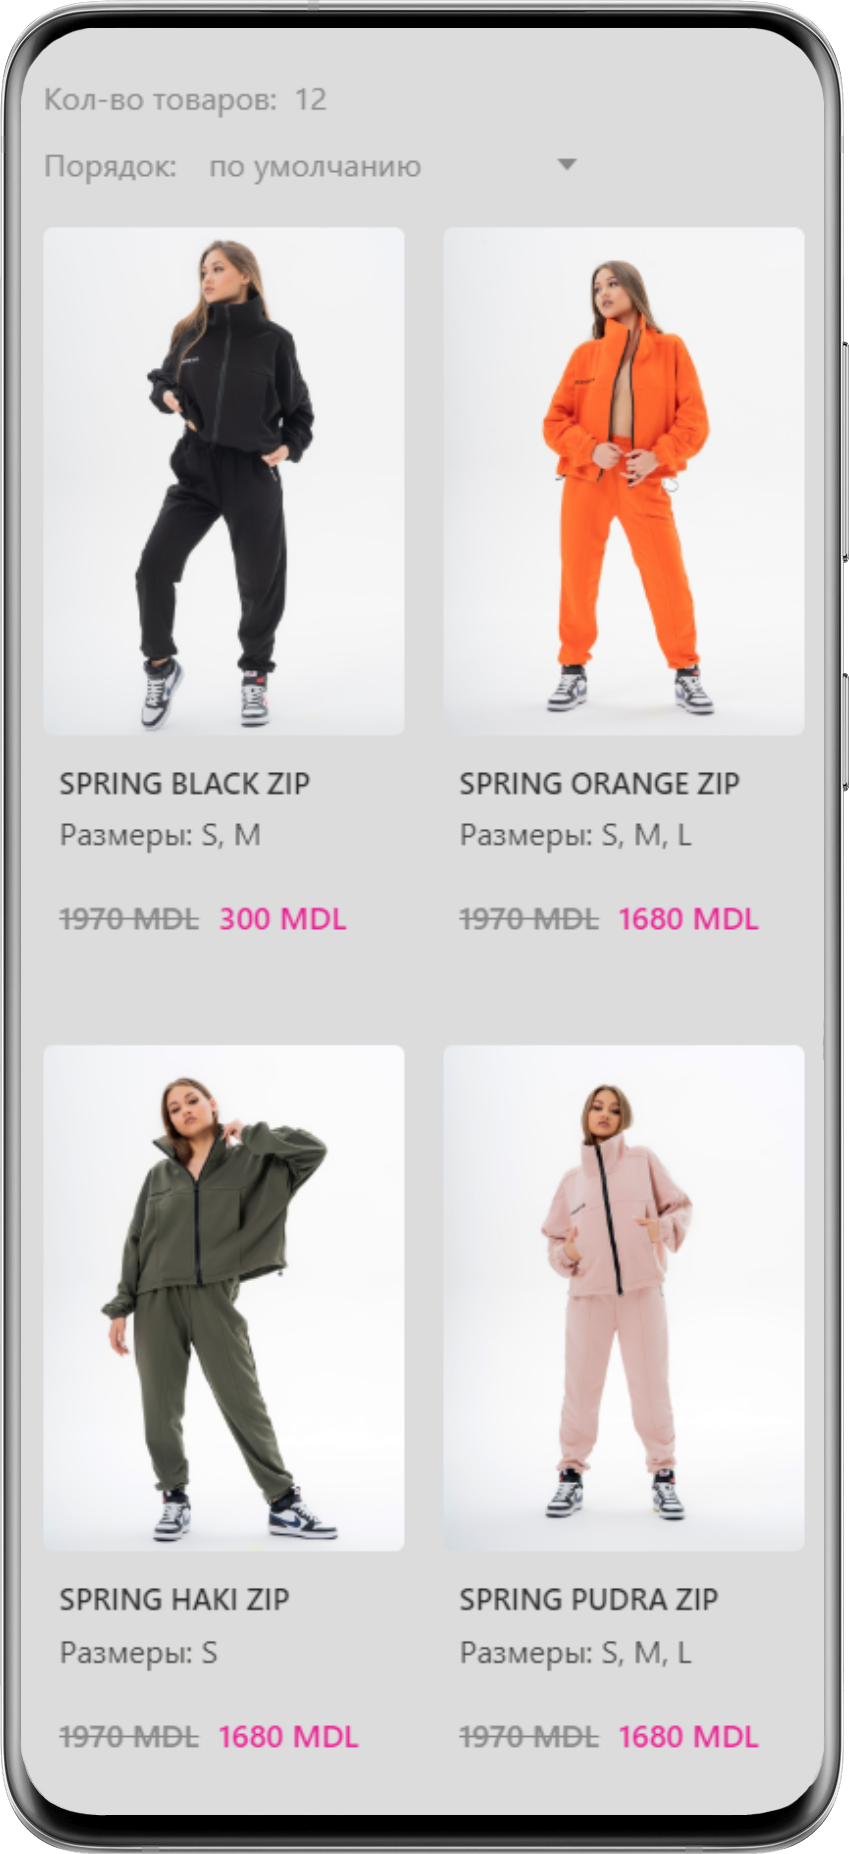 Crearea magazinului online de haine trendy moodmerch.shop